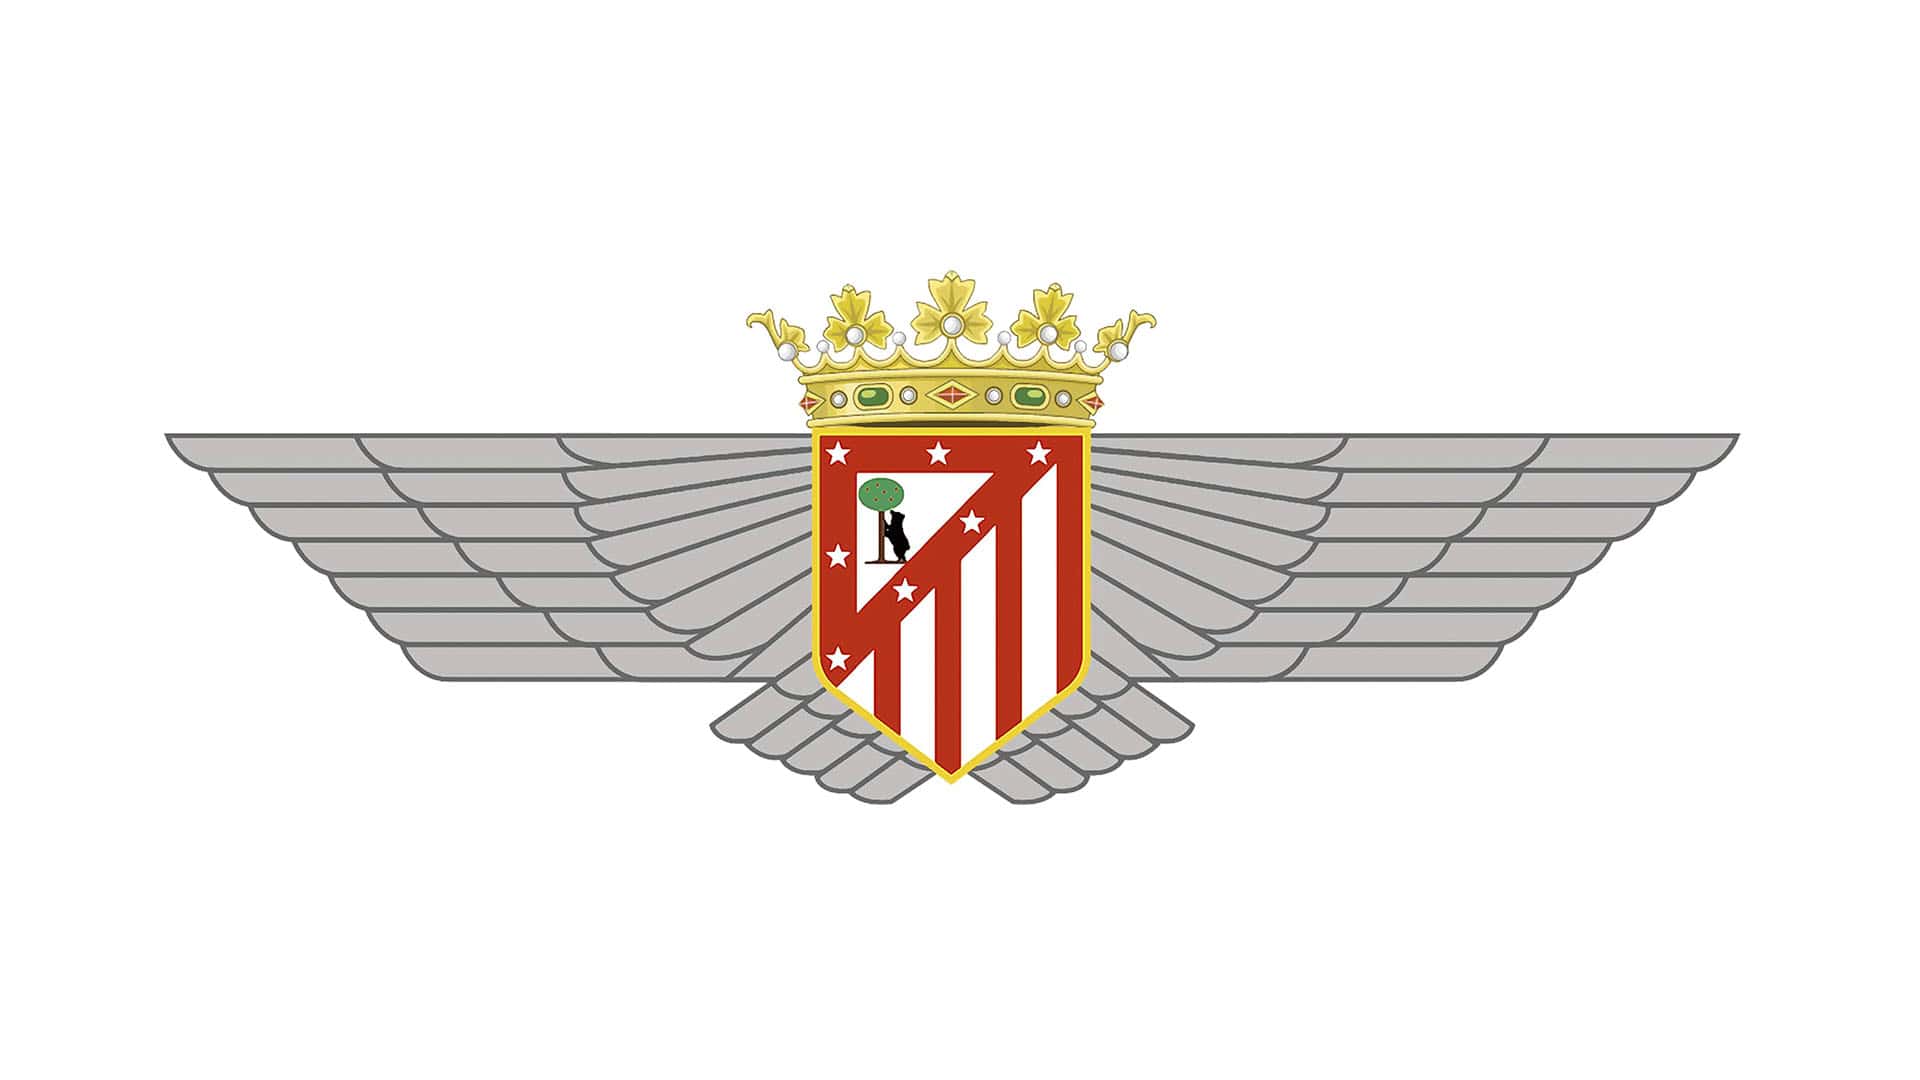 Atletico Madrid Logo | Significado, História e PNG